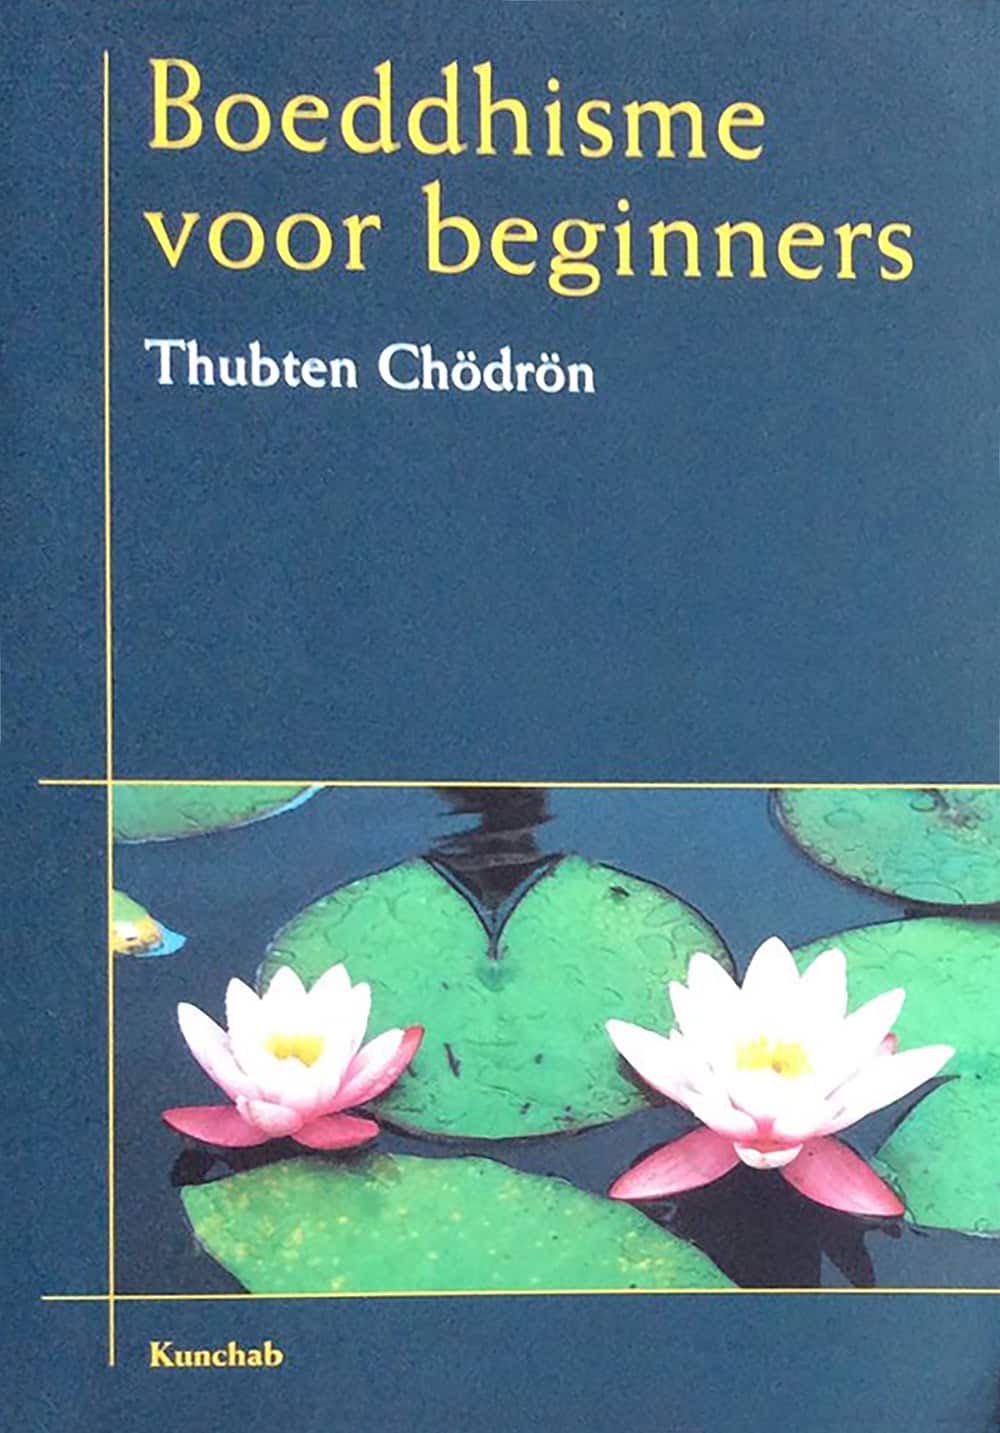 Okładka buddyzmu dla początkujących w języku niderlandzkim